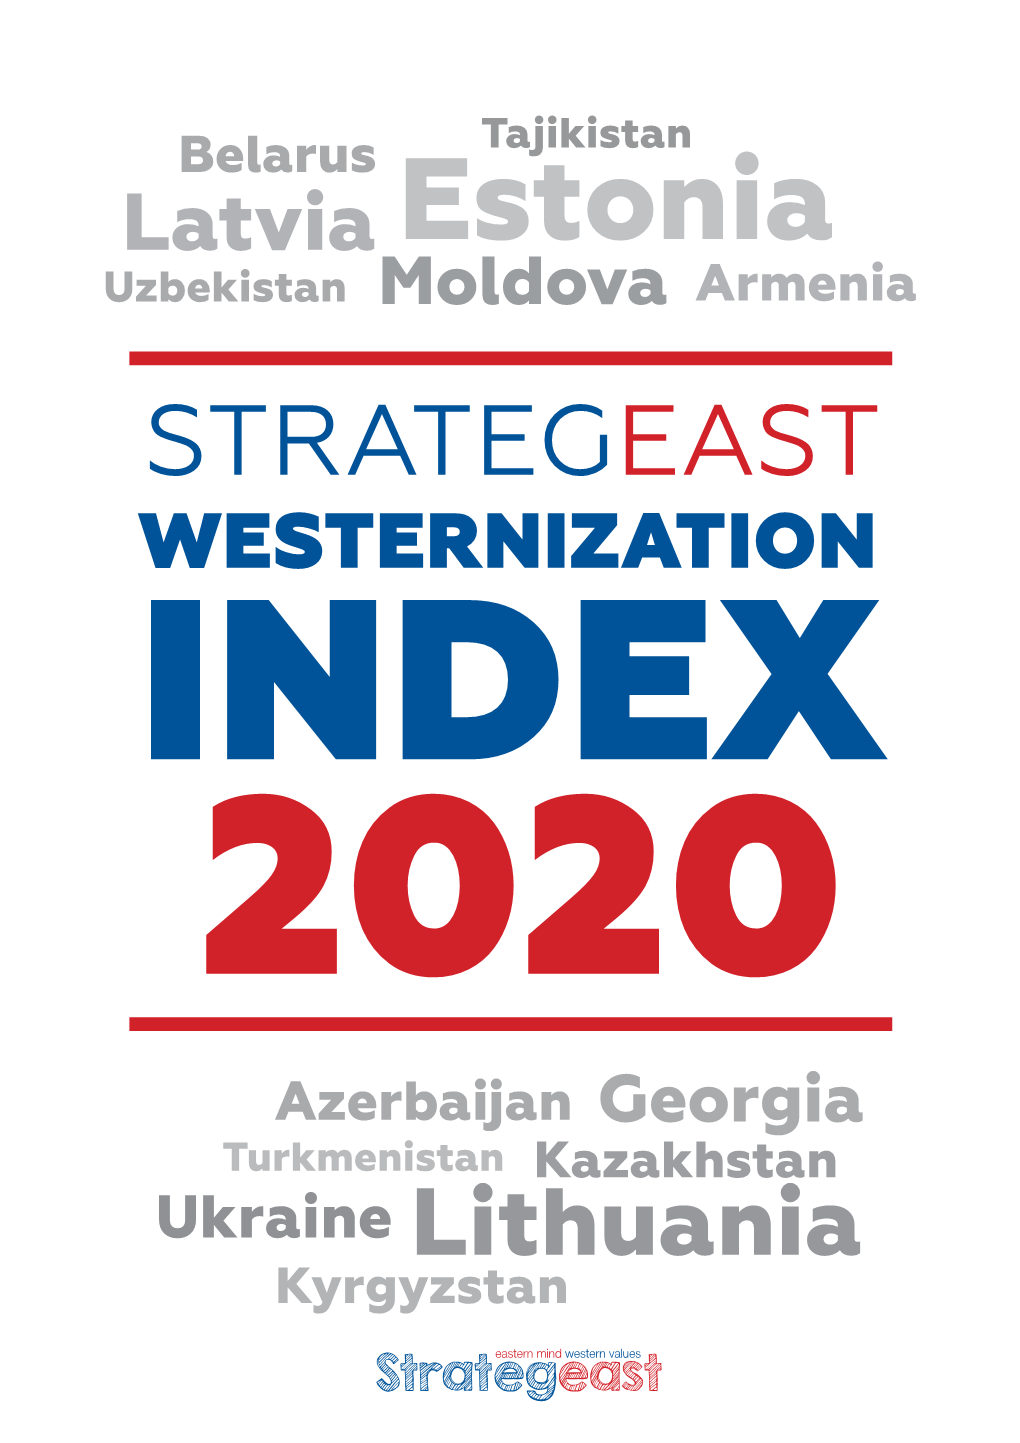 Westernization Index 2020